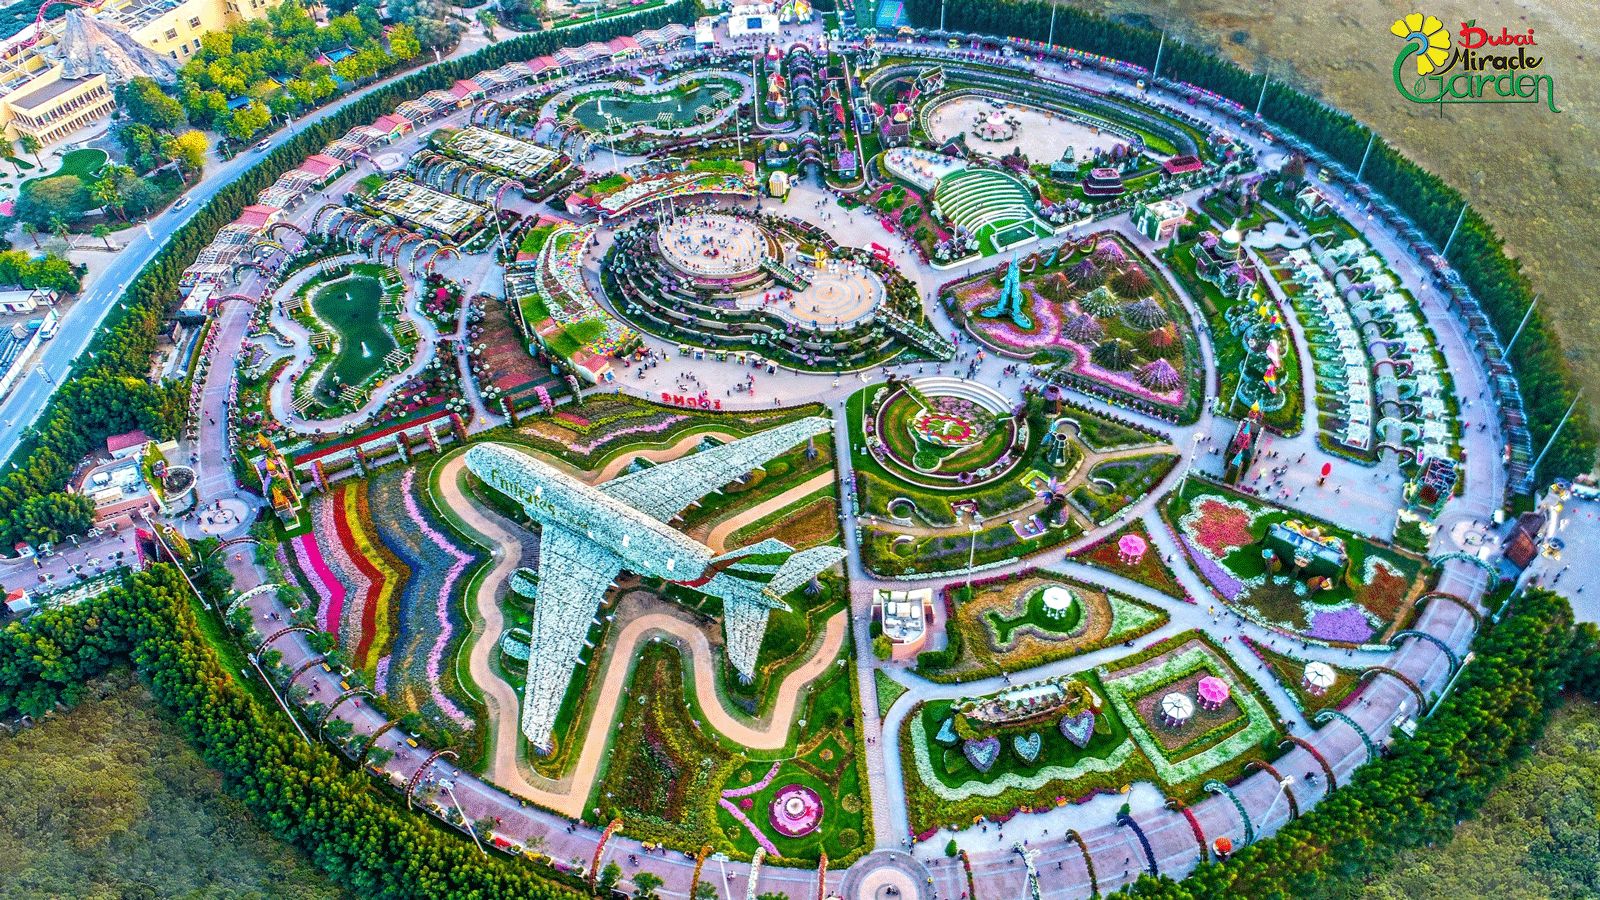 Dubai Miracle Garden World S Largest